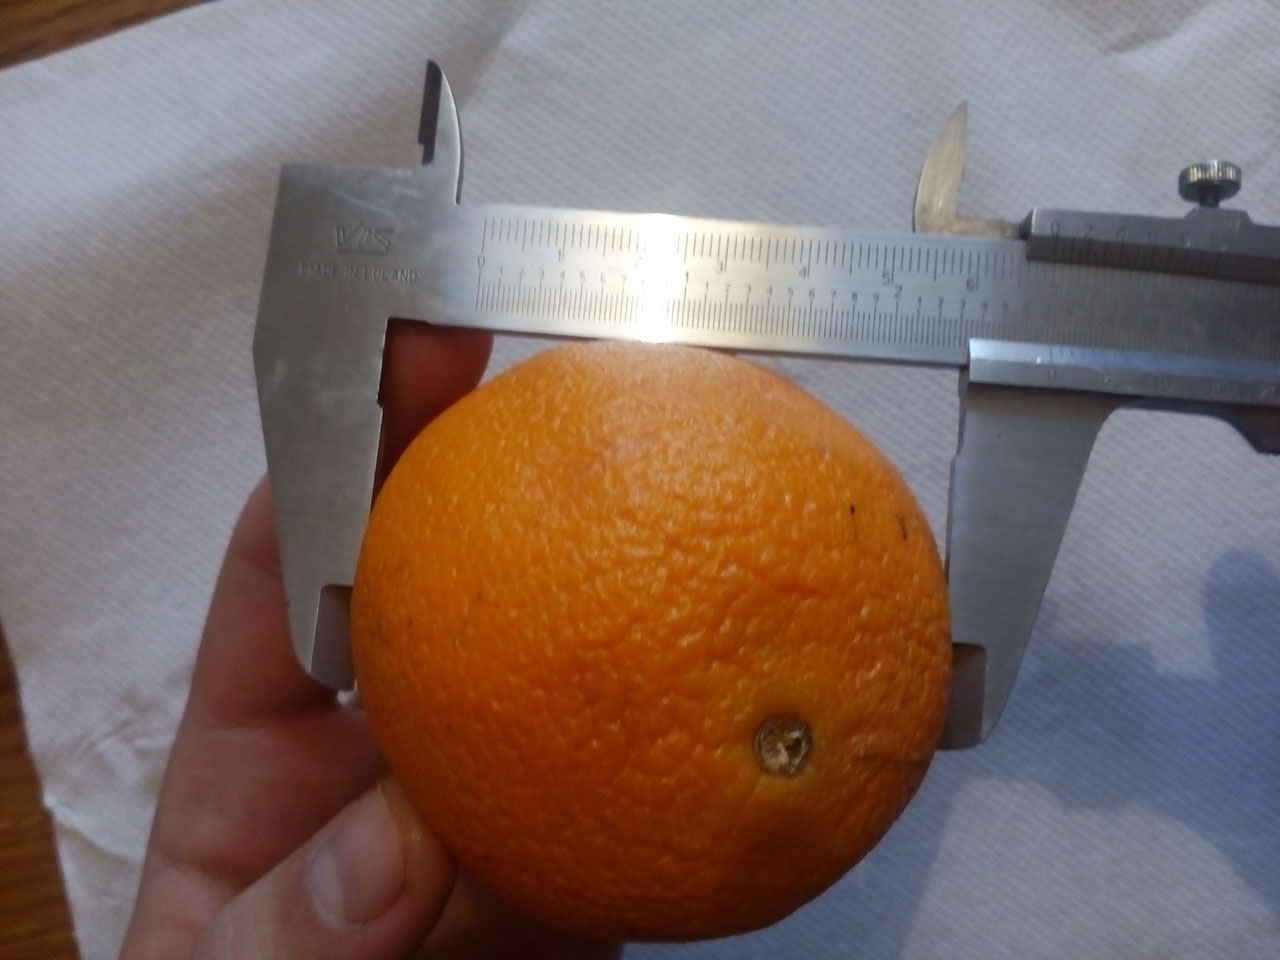 Slika prikazuje mjerenje promjera naranče pomičnom mjerkom